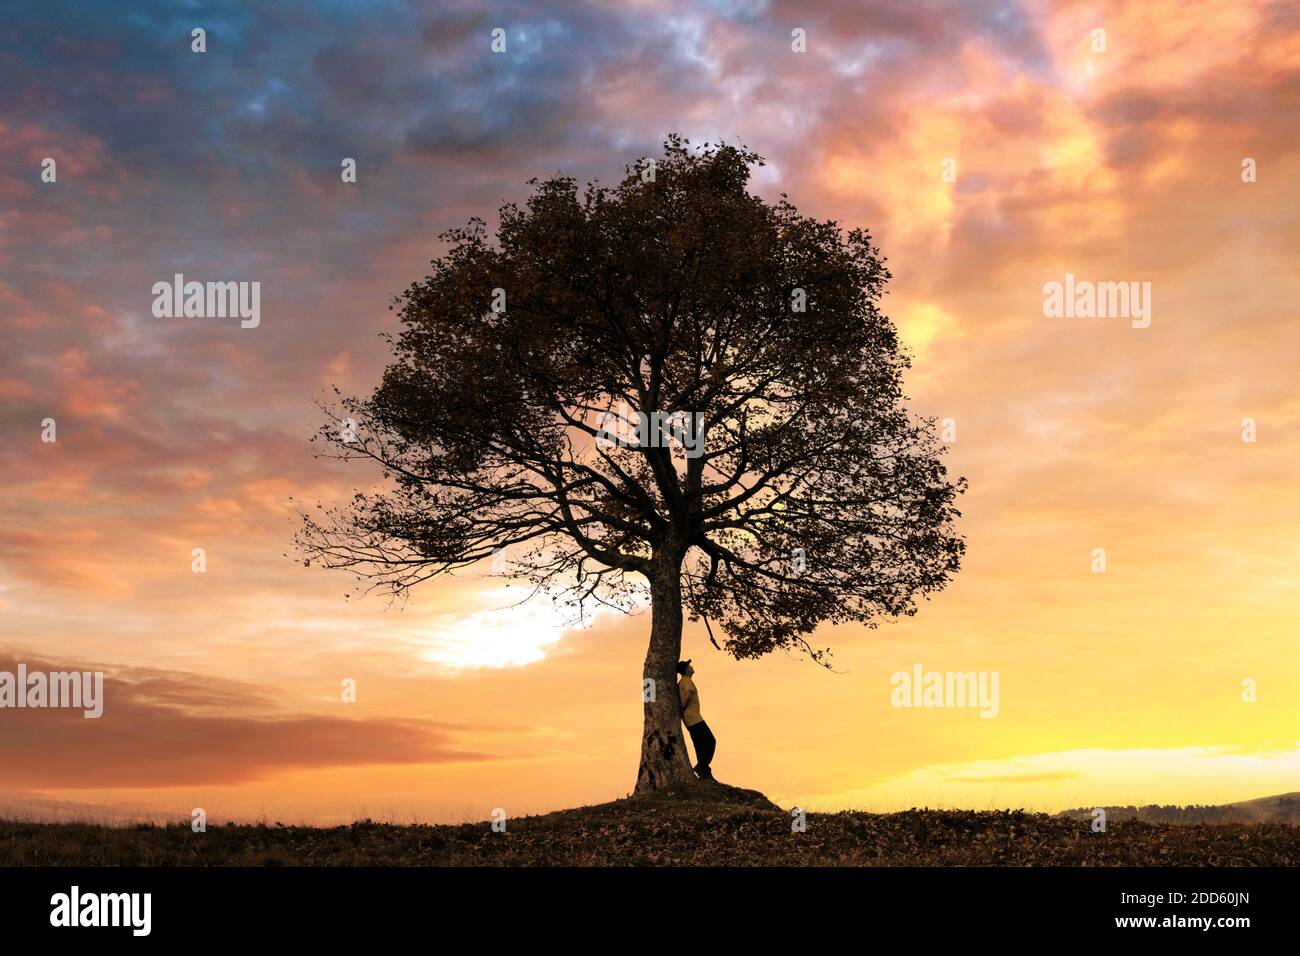 Silhouette d'en vertu de l'arbre majestueux au soir prés des montagnes au coucher du soleil. Scène colorée dramatique avec orange ciel clair. Photographie de paysage Banque D'Images